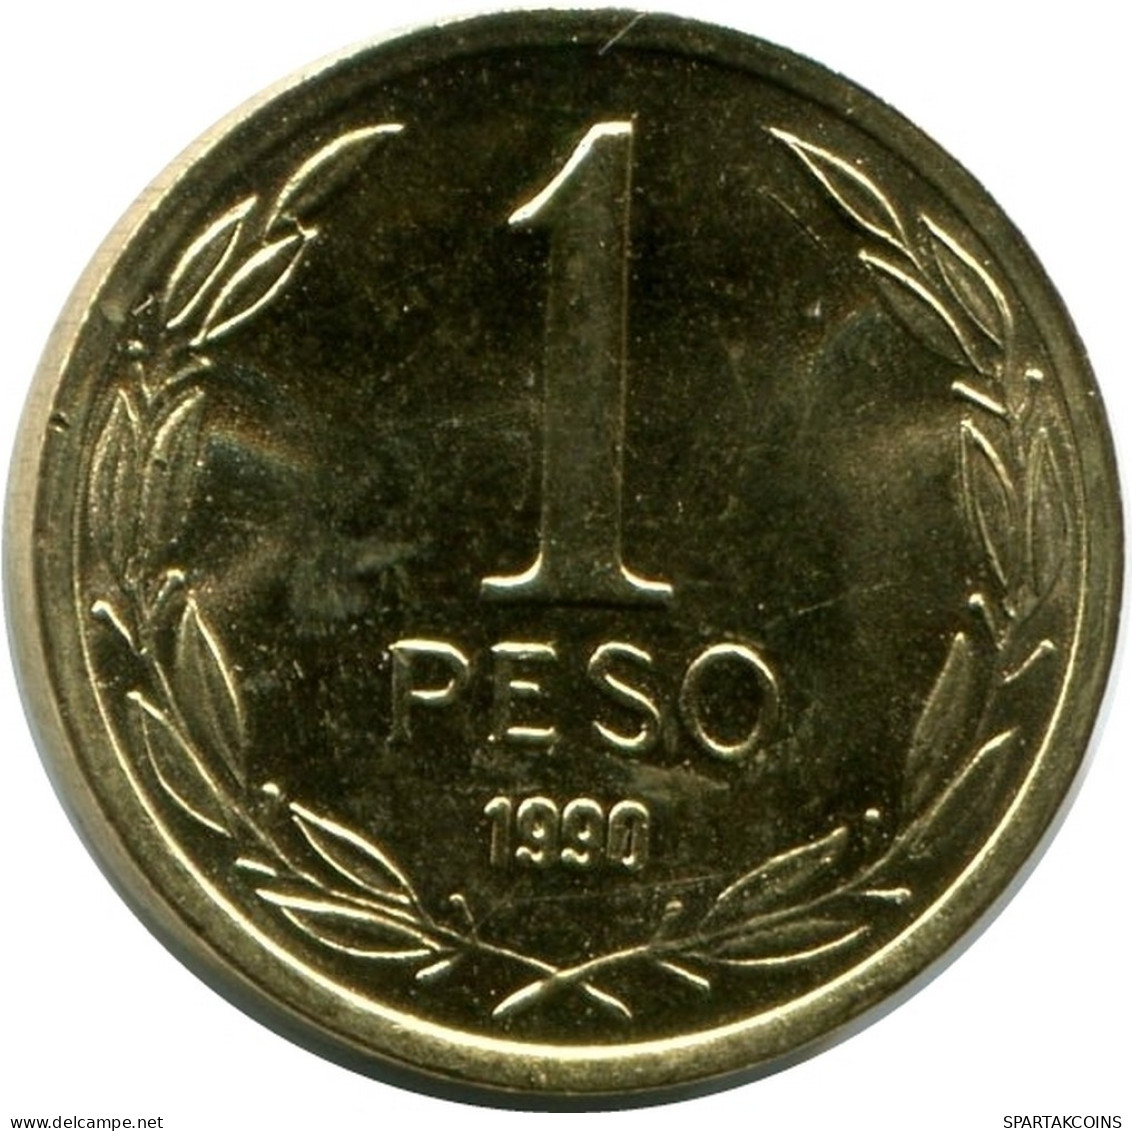 1 PESO 1990 CHILE UNC Coin #M10070.U.A - Chili